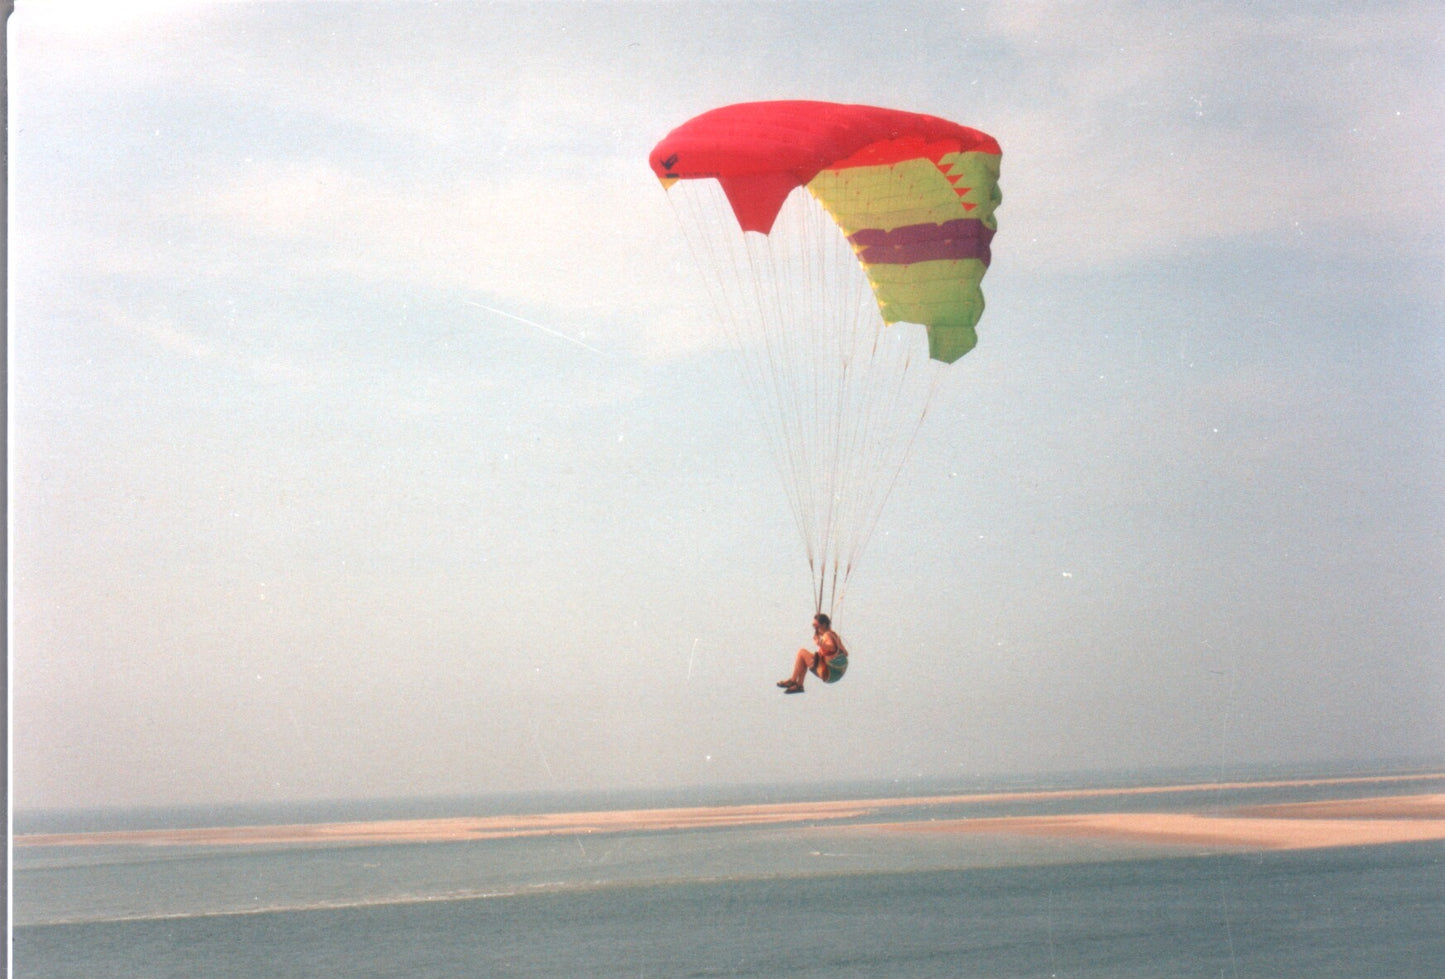 Vintage paraglider being flown by Nadine in 1990s